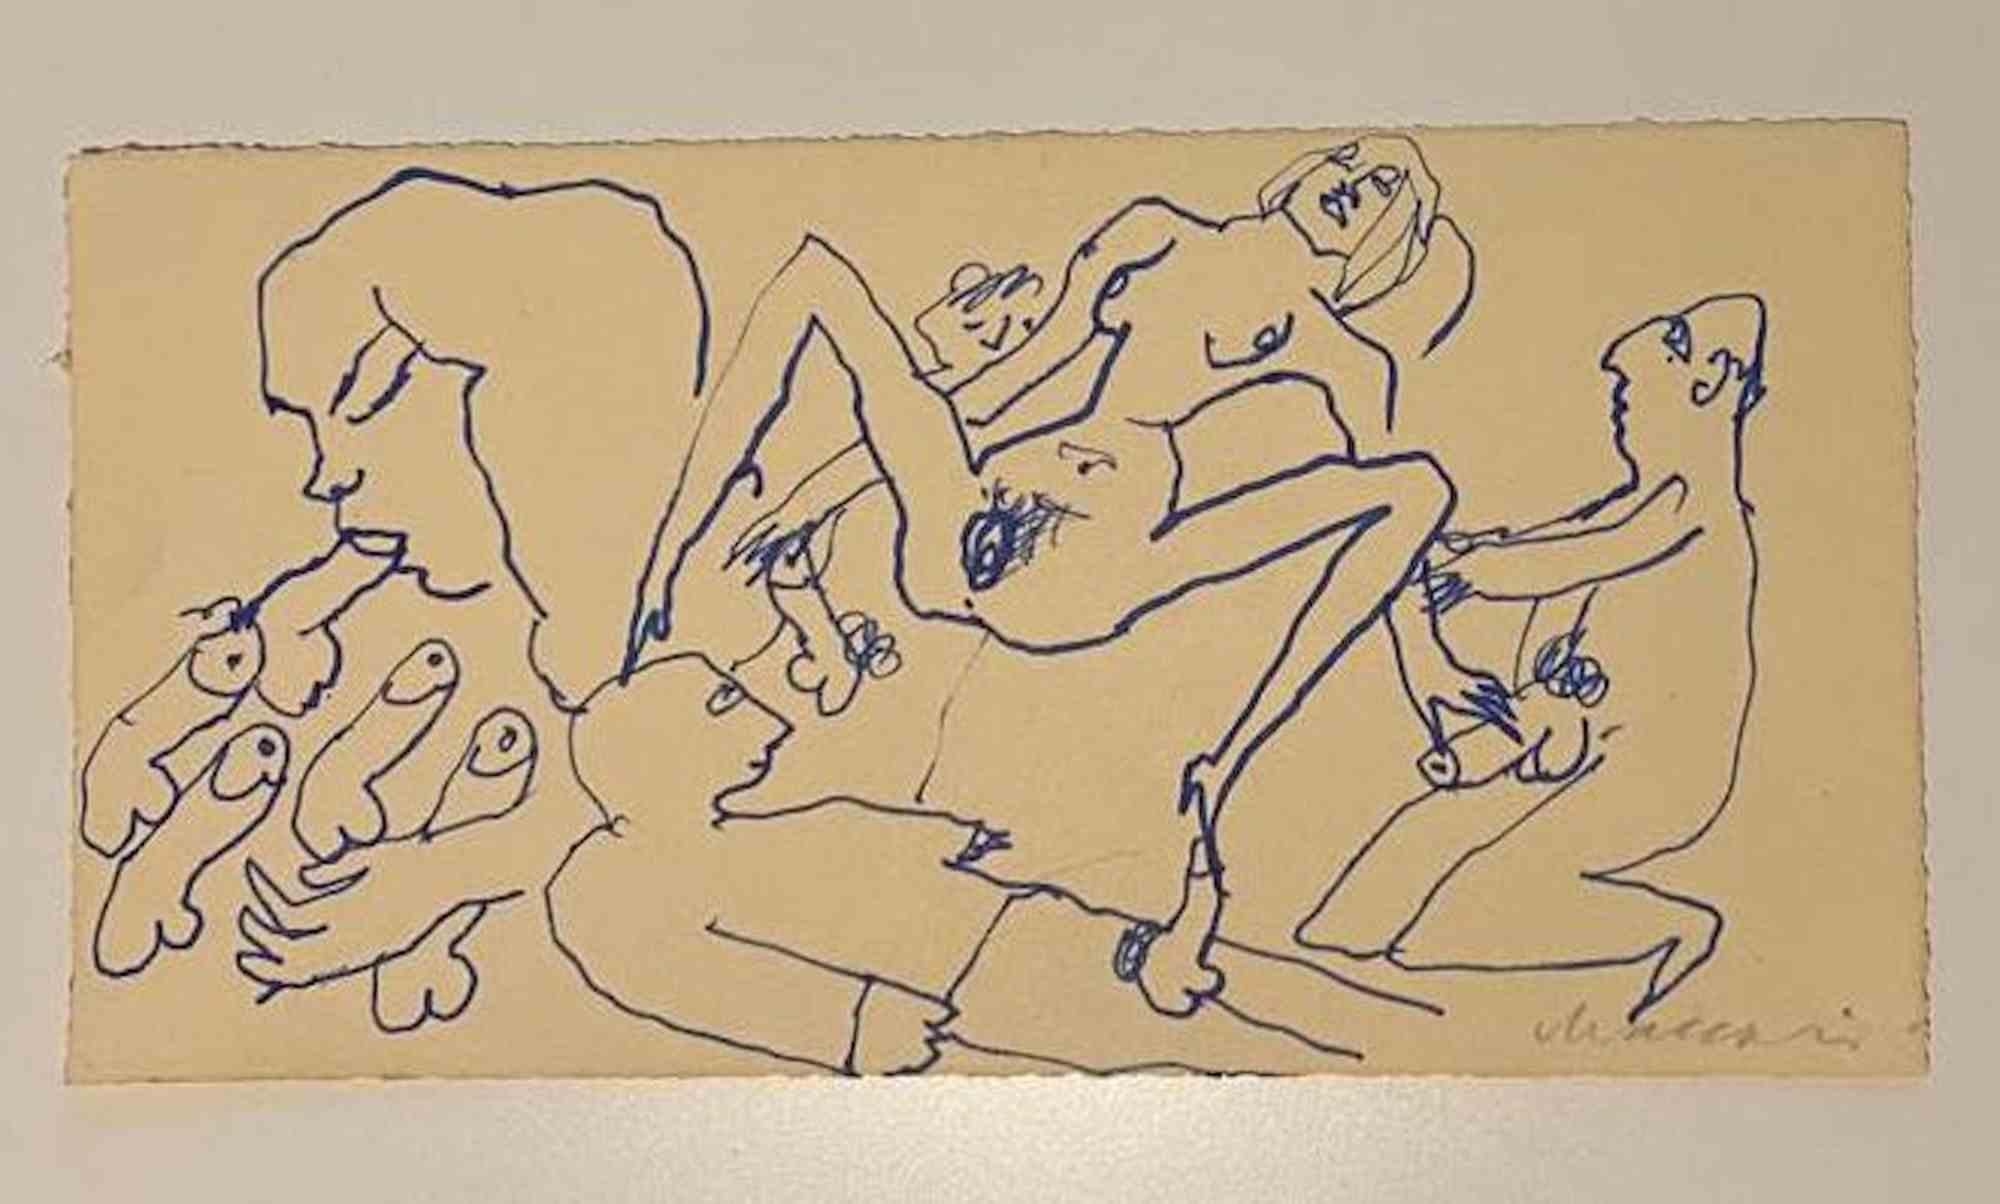 Orgy ist eine Federzeichnung von Mino Maccari  (1924-1989) in der Mitte des 20. Jahrhunderts.

Handsigniert auf der Unterseite.

Gute Bedingungen.

Mino Maccari (Siena, 1924-Rom, 16. Juni 1989) war ein italienischer Schriftsteller, Maler, Graveur